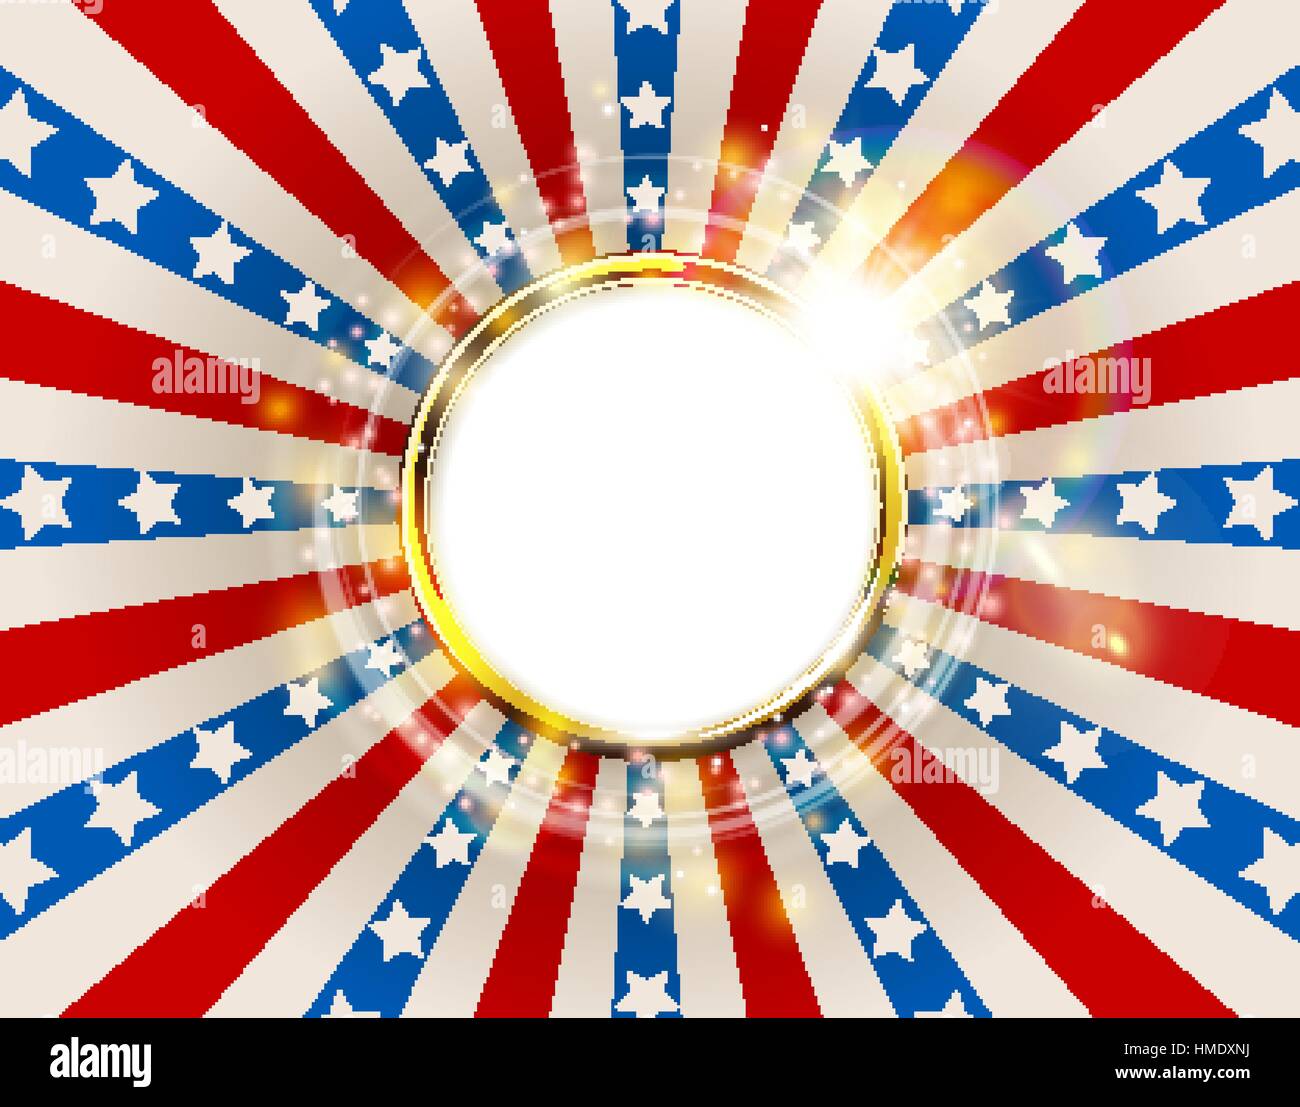 Patriotischen Hintergrund, die Vereinigten Staaten von Amerika mit Funken. USA Flagge Farbe runder Rahmen. American Memorial Day oder Independence Day golden Ring-Konzept Stock Vektor